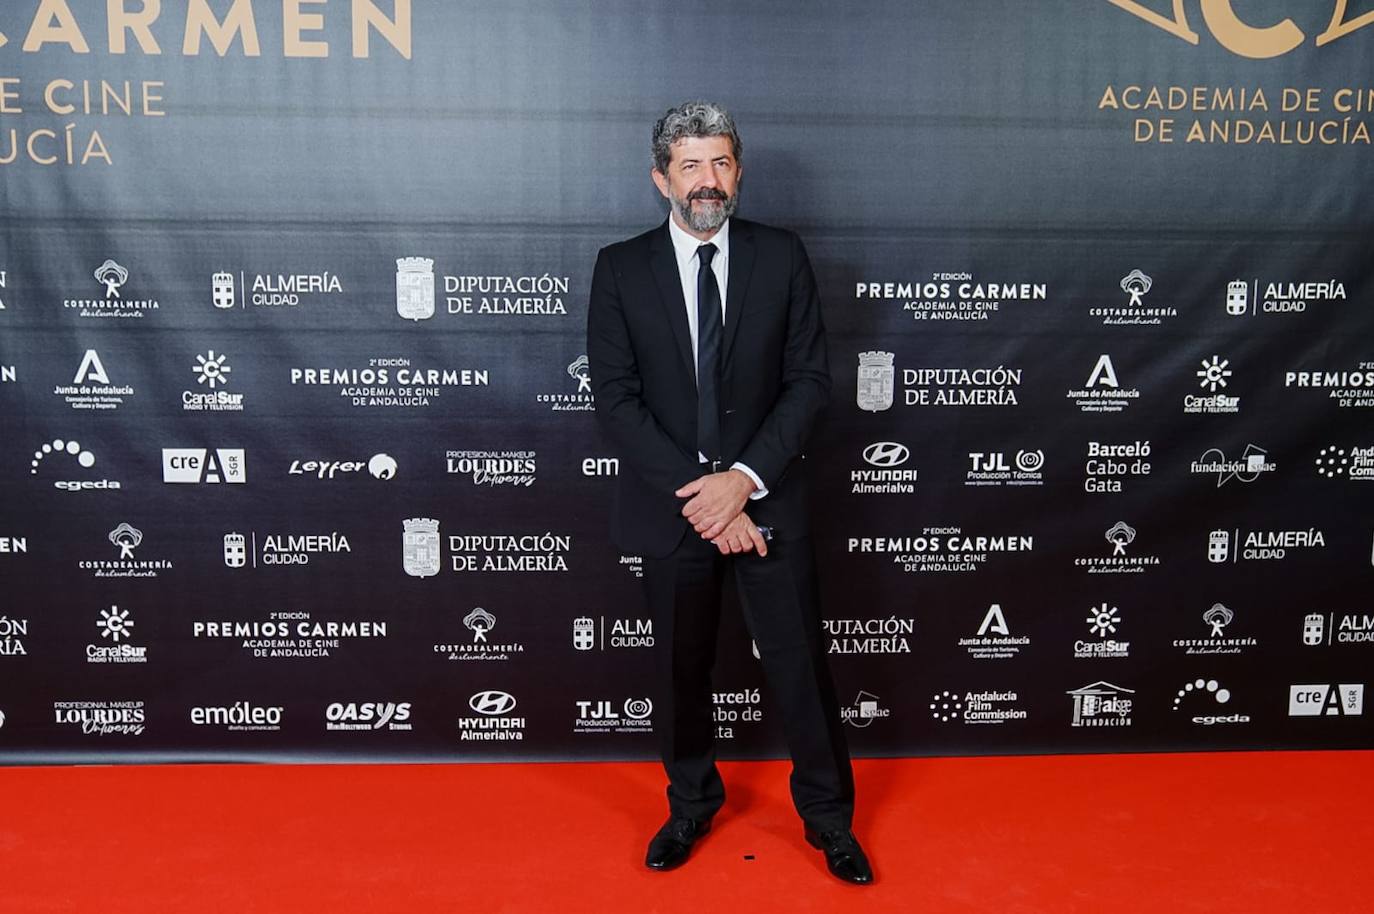 Fotos: Así fue la alfombra roja de los Premios Carmen en Almería